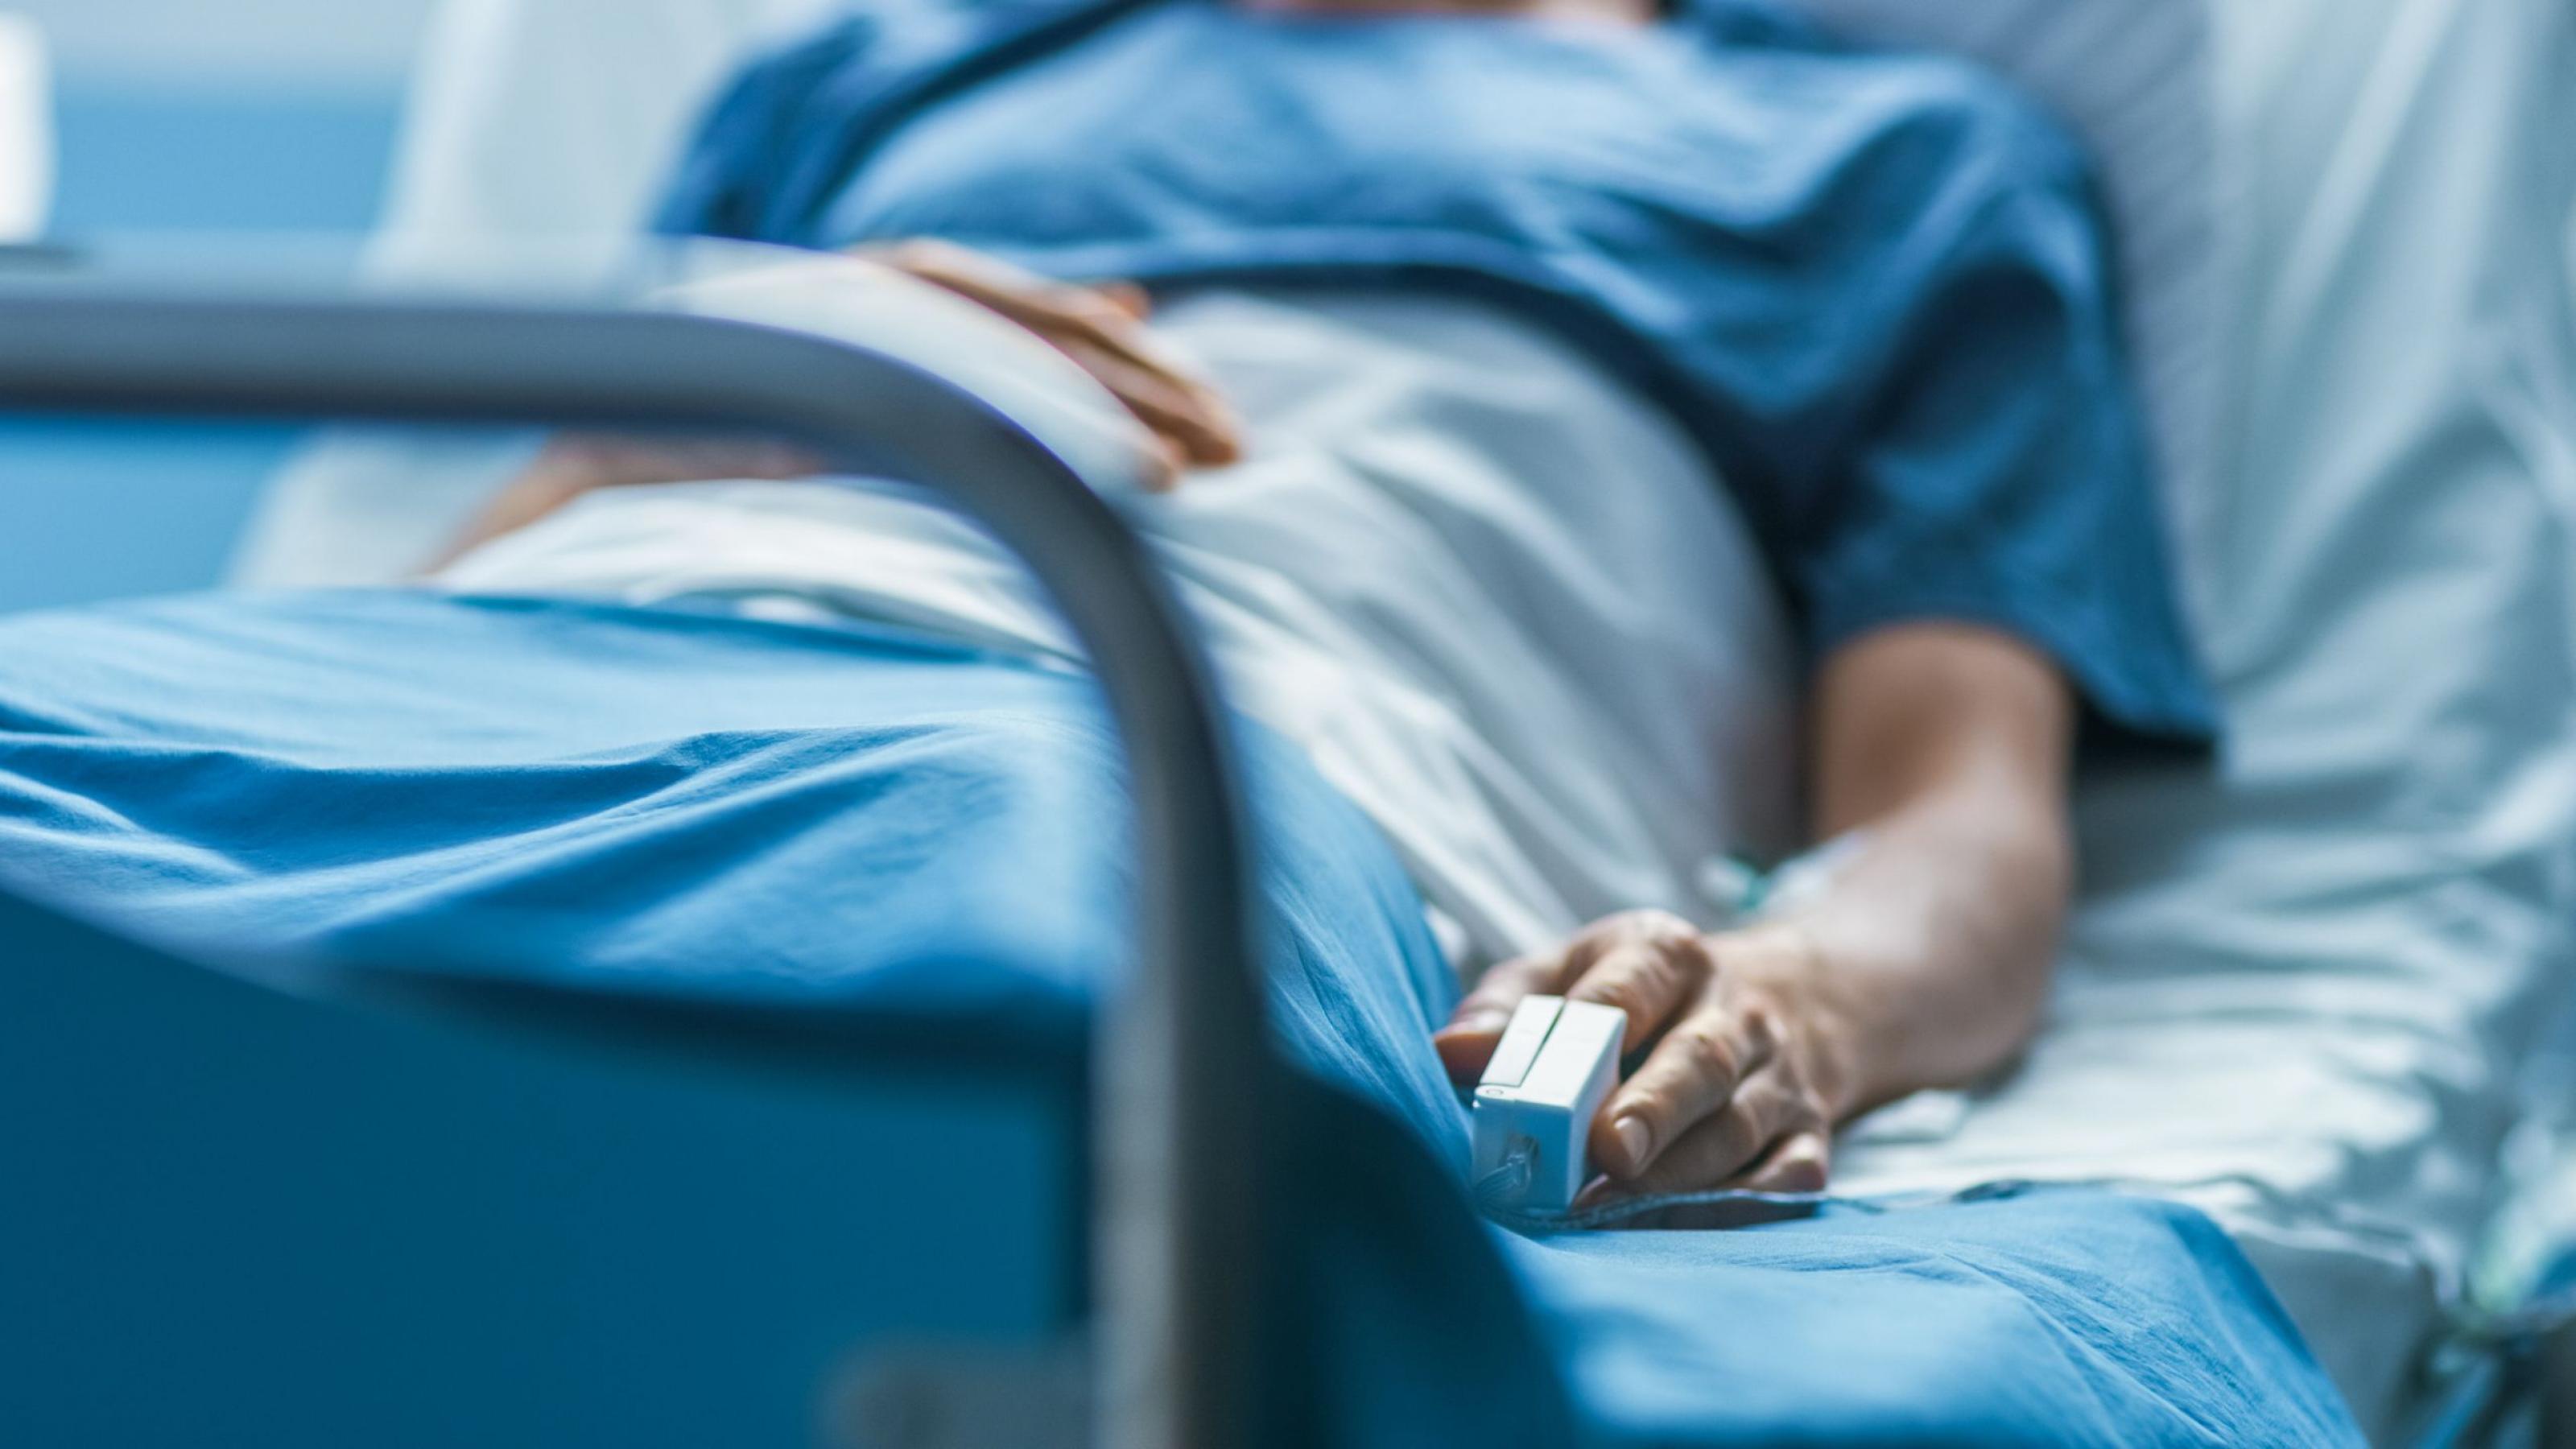 Ein Patient liegt im Krankenhaus im Bett. Mit einer Patientenverfügung kann er festlegen, wie die weitere Behandlung bei schwerer Krankheit aussehen soll.